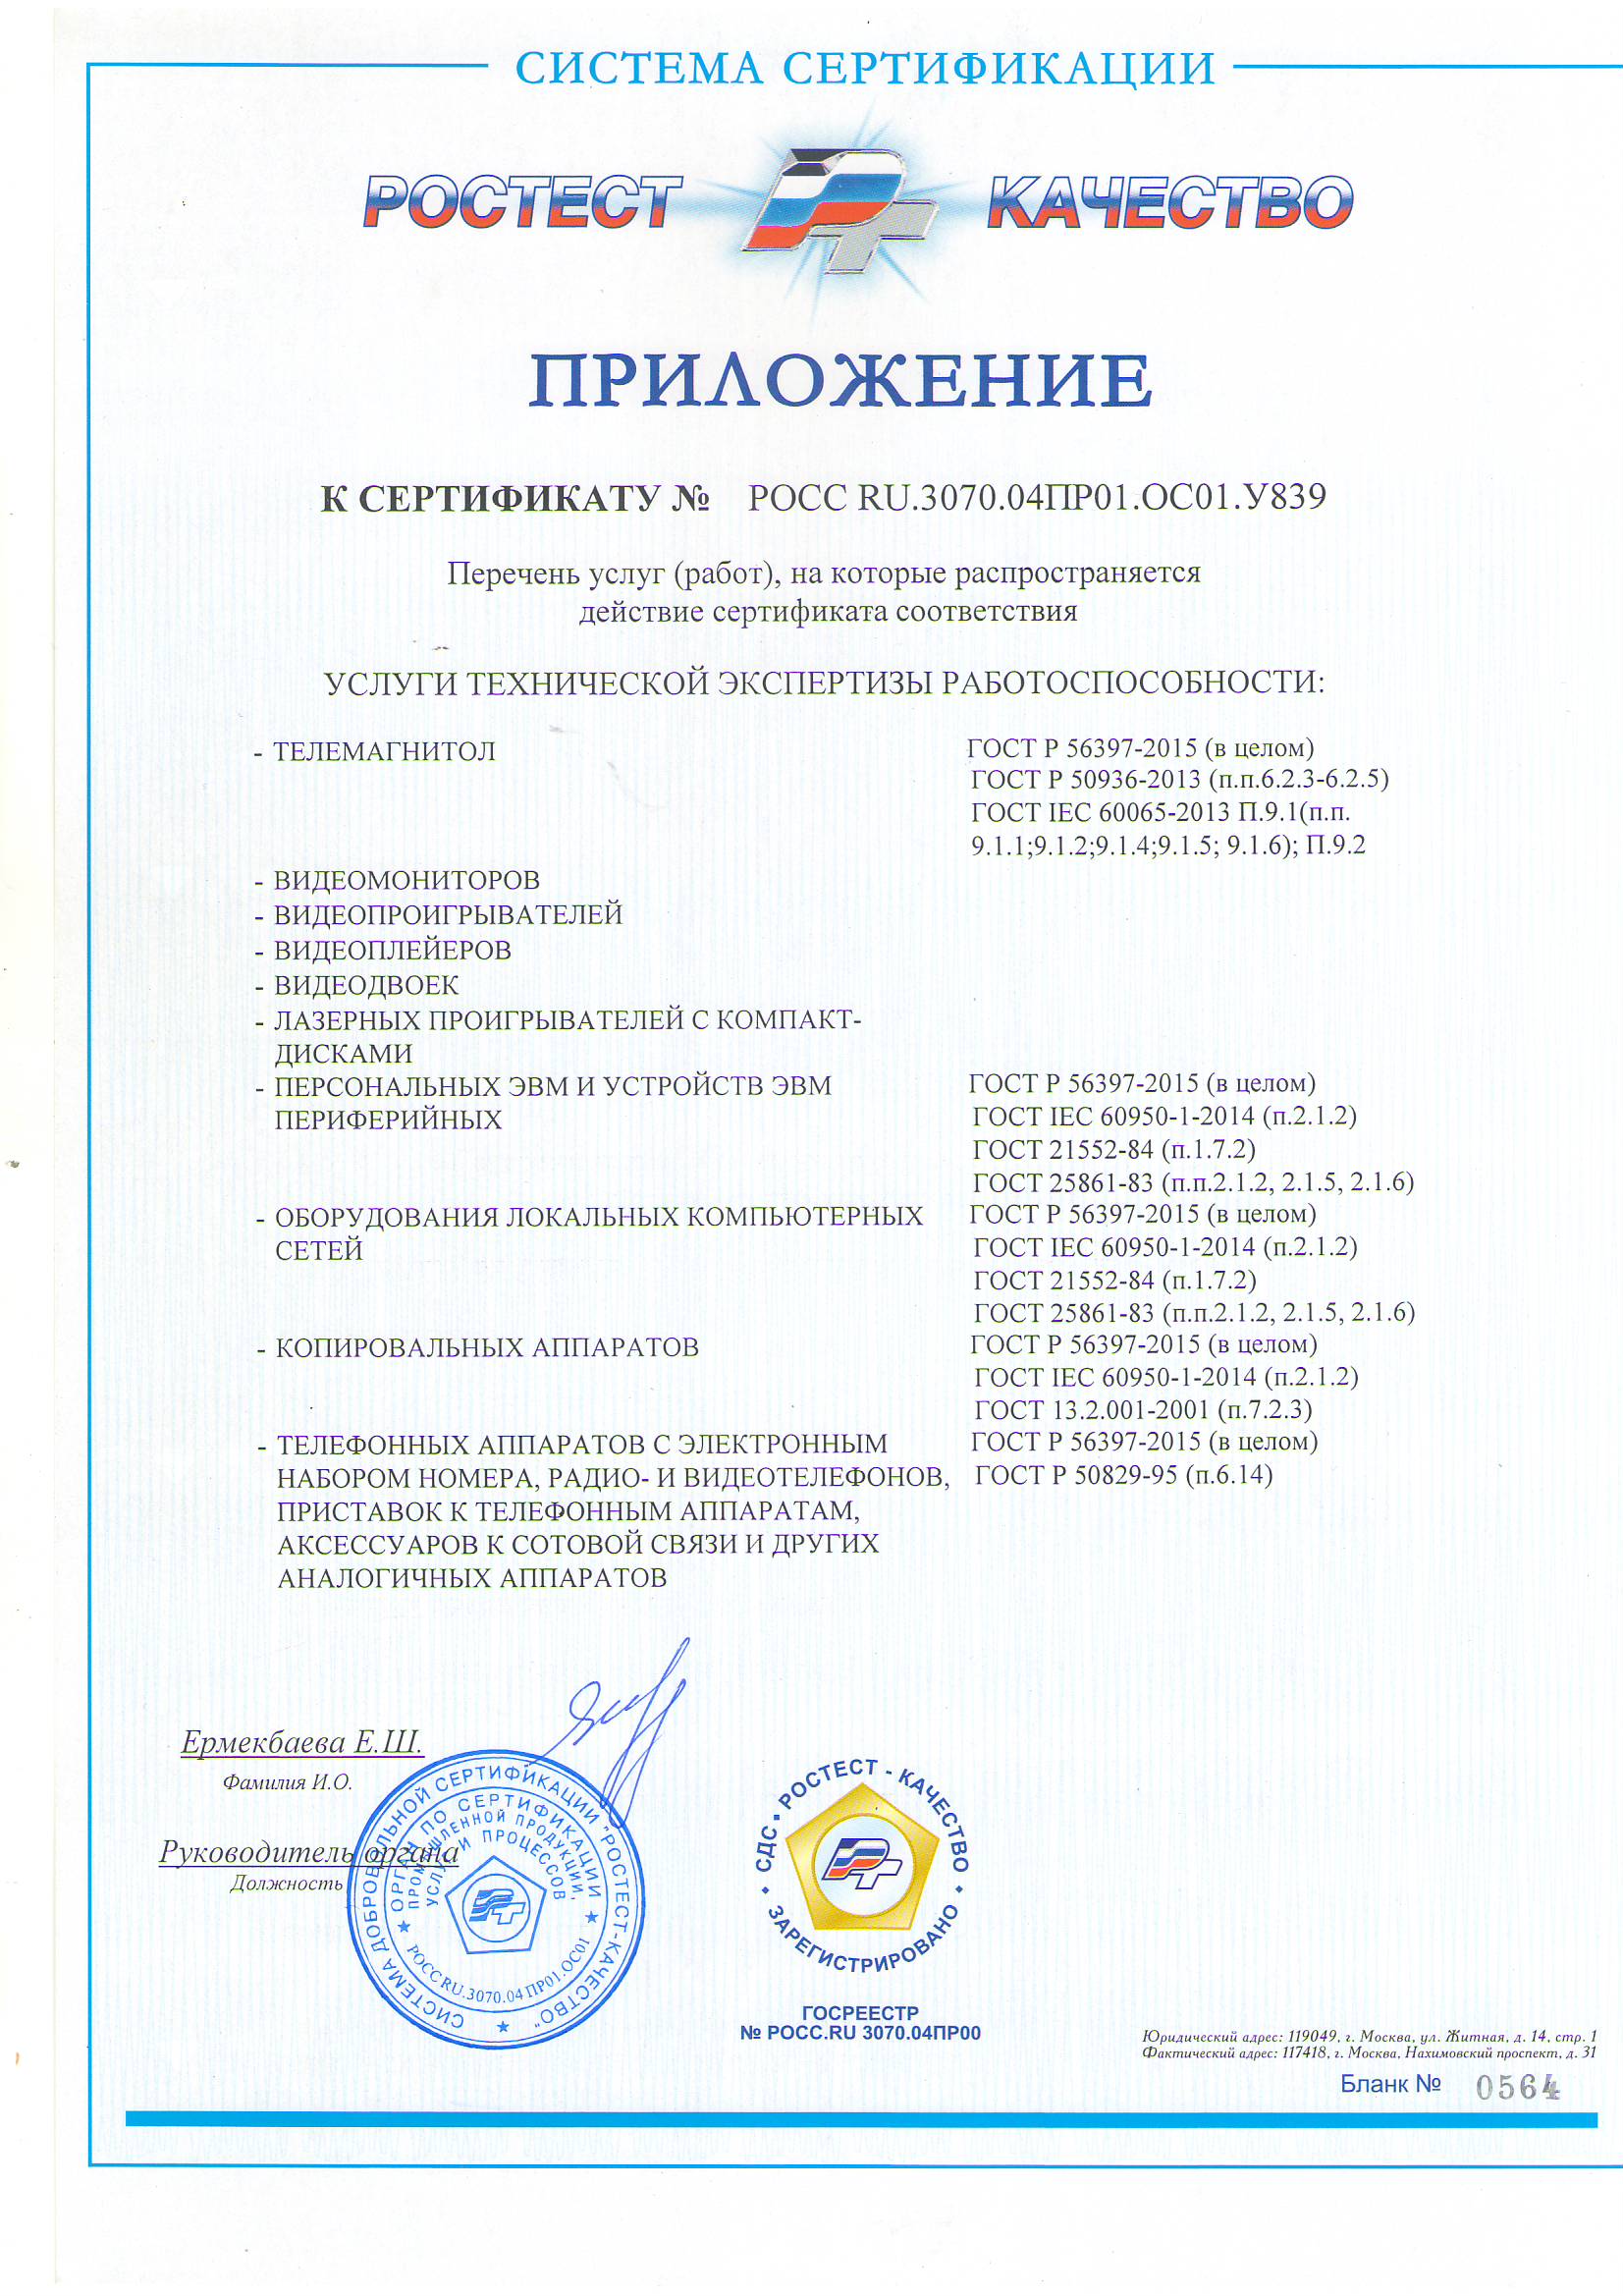 Сертификат ТР ТС на ПЭВМ "Enko"